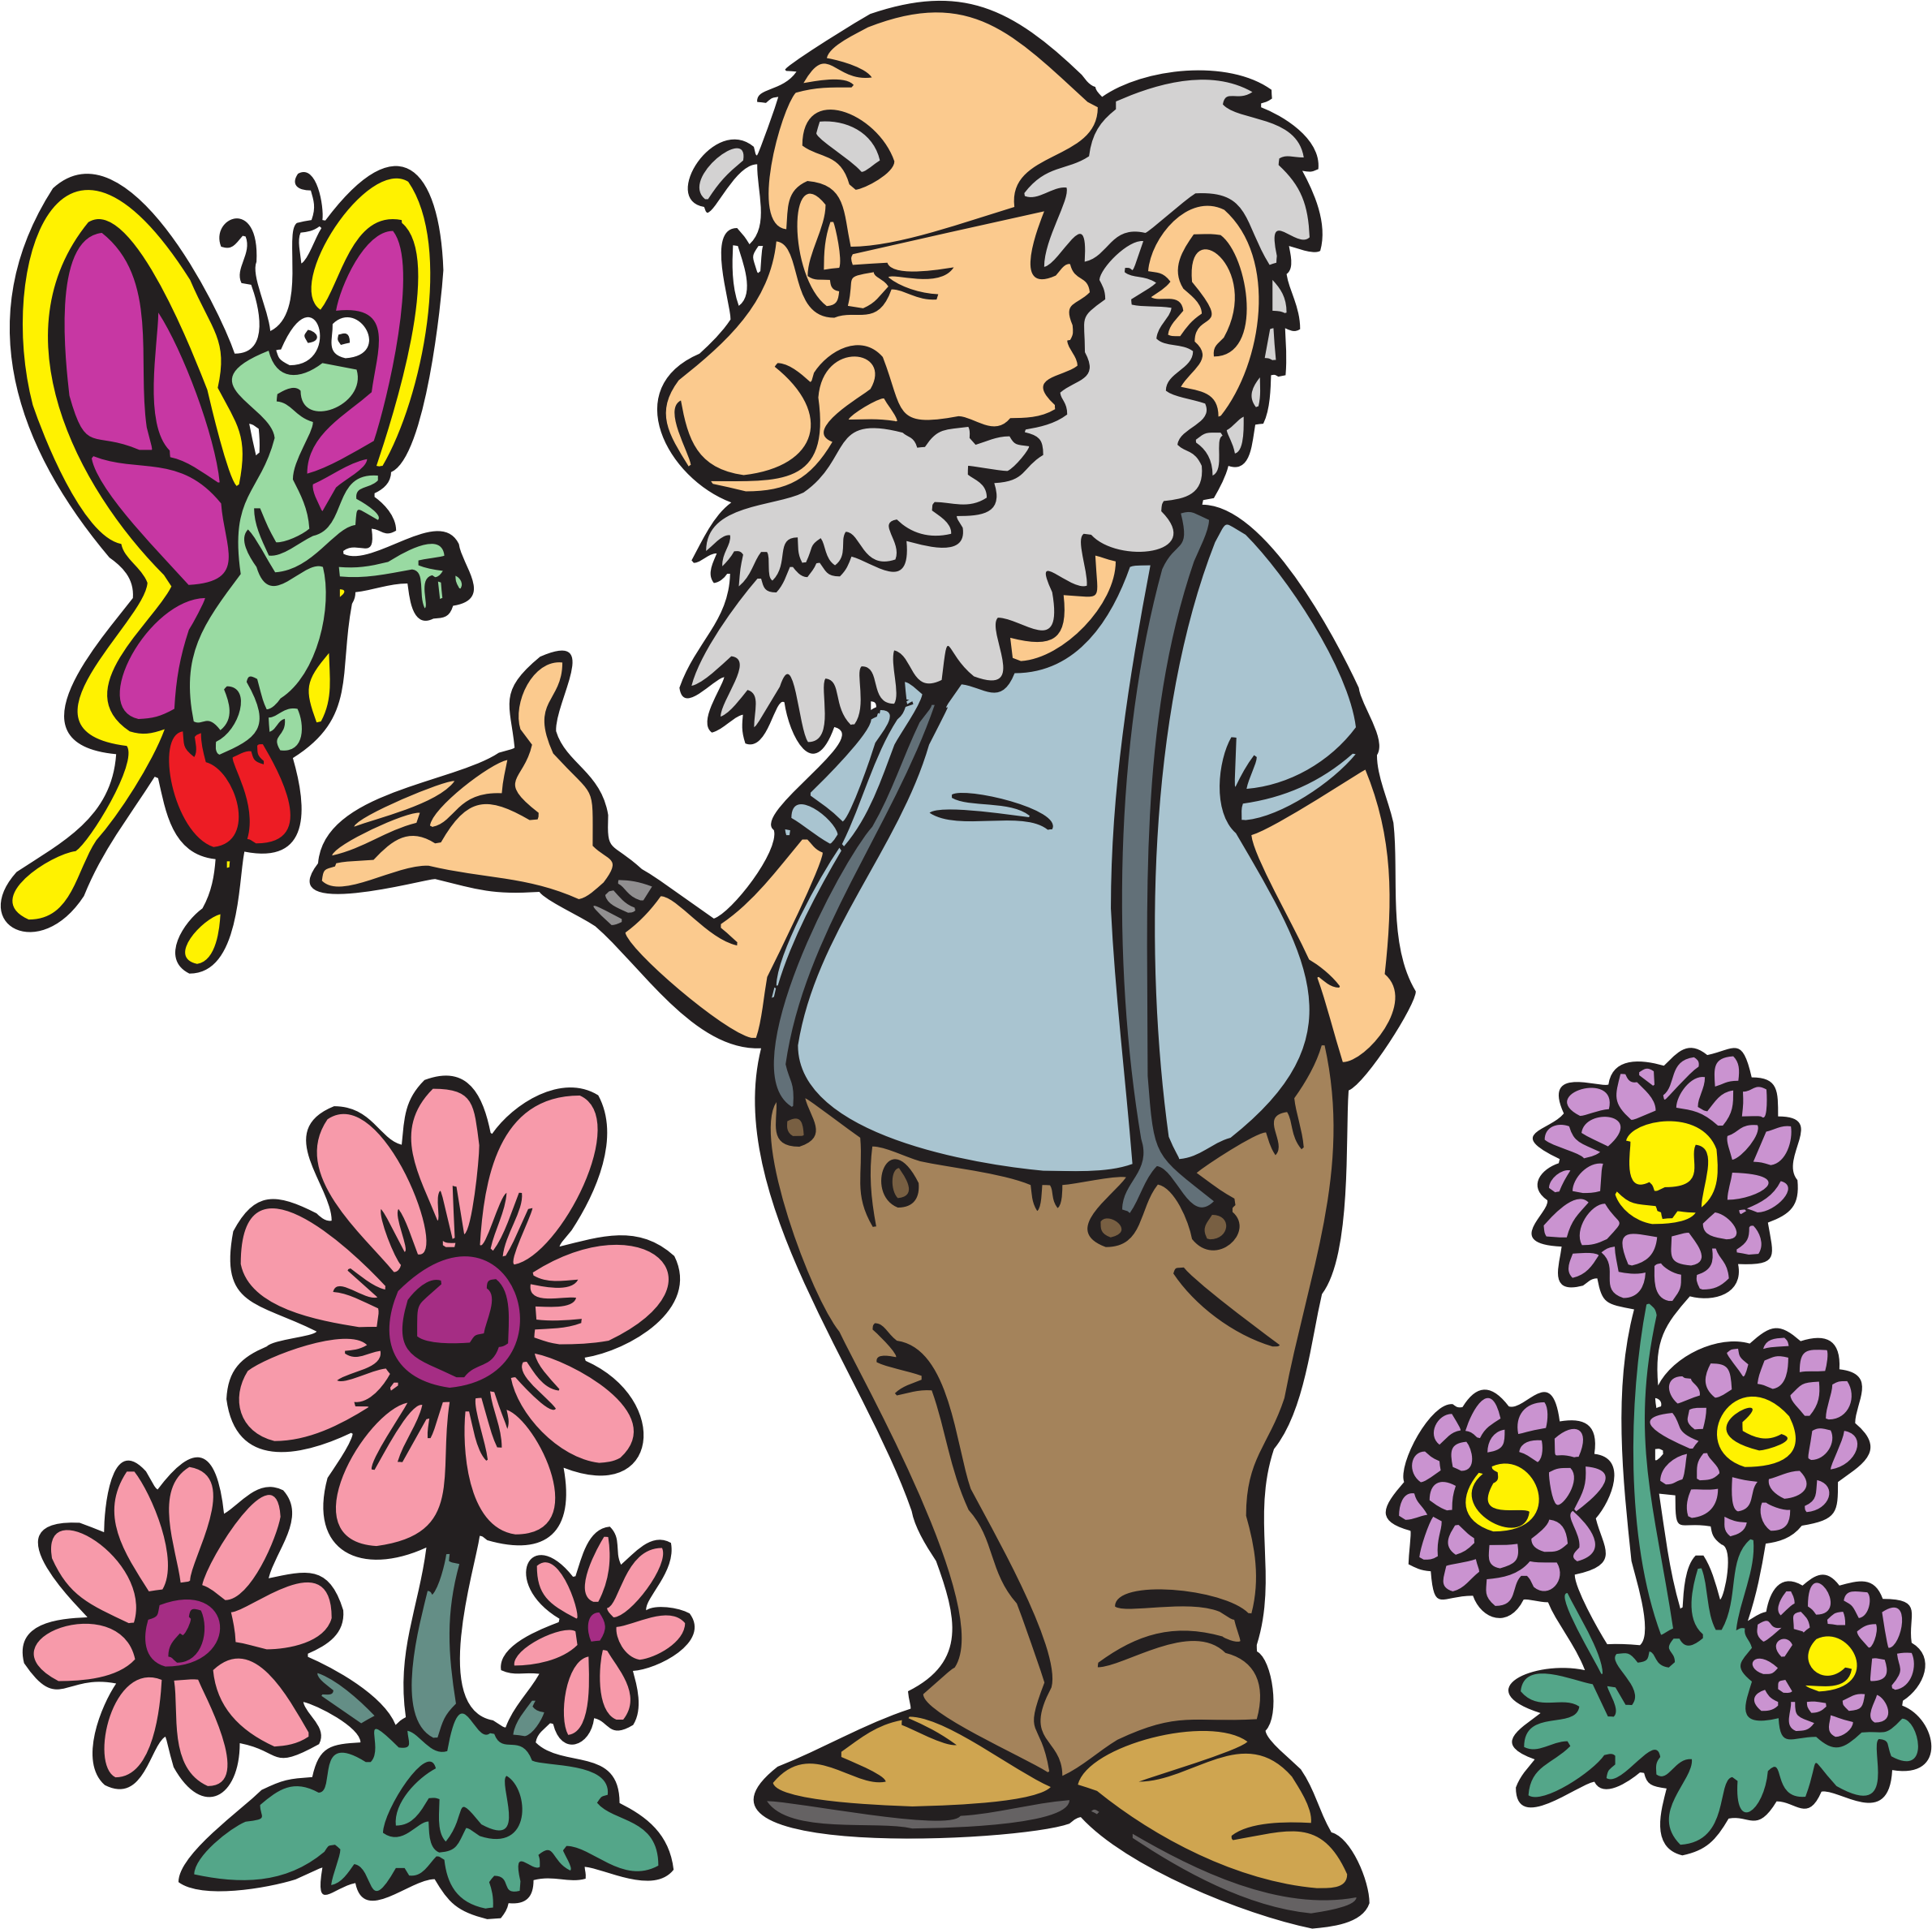 Big Image - Old Man With A Beard Cartoon (2381x2377)